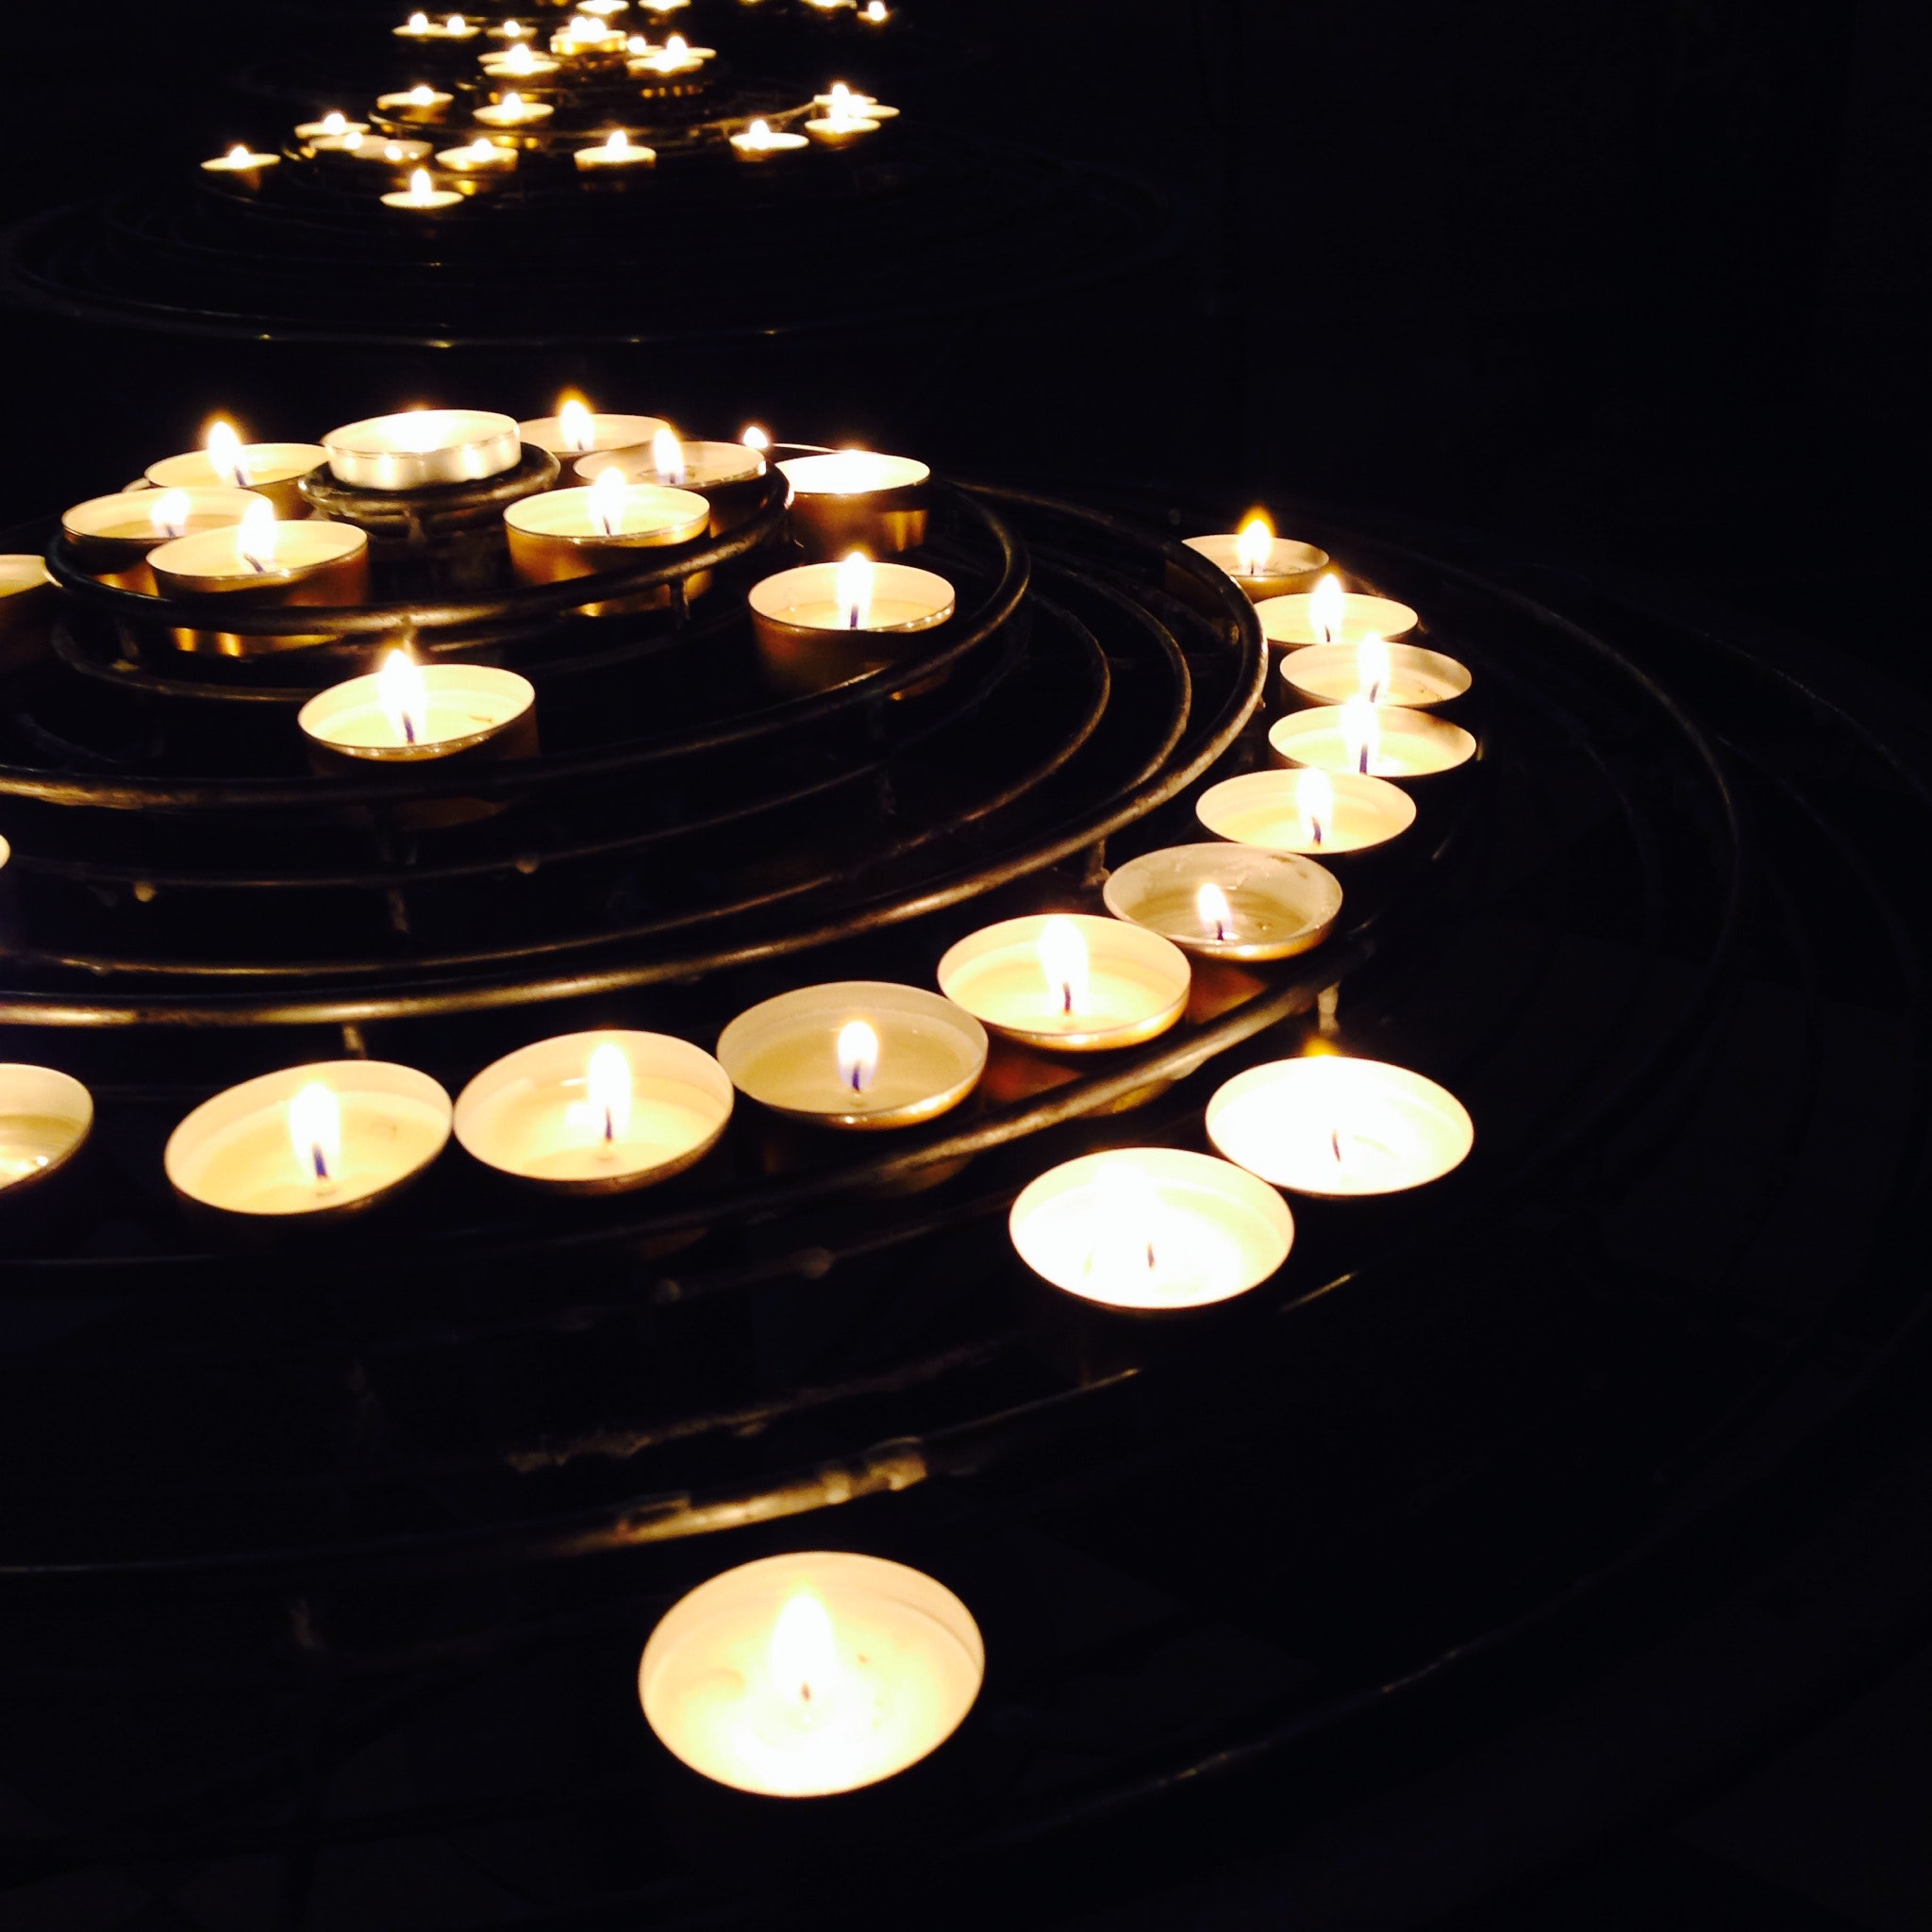 Illuminated candles on black background photo